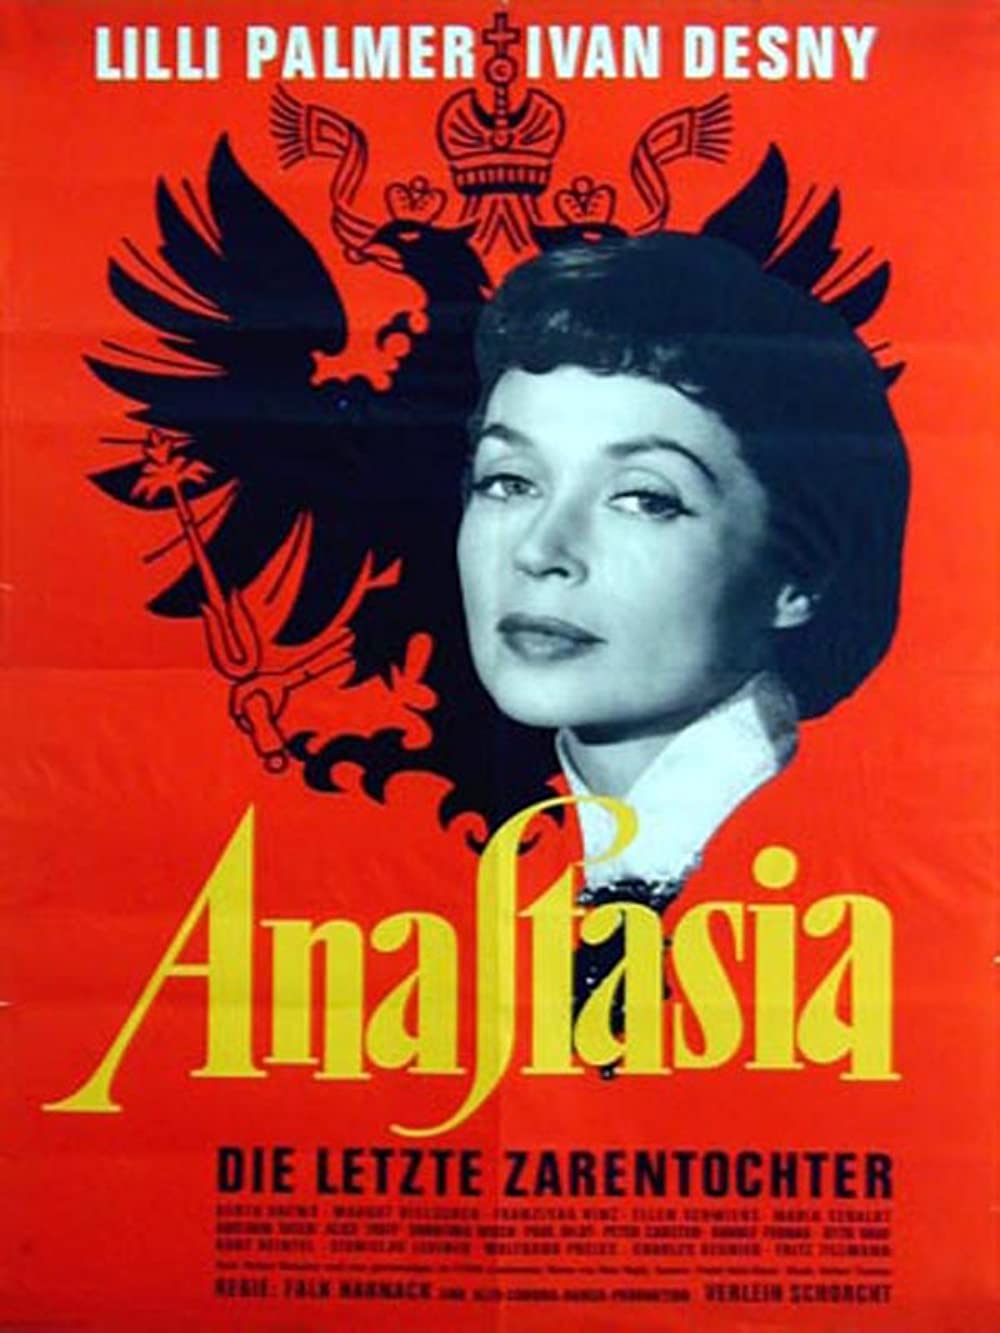 Filmbeschreibung zu Anastasia, die letzte Zarentochter (1956)